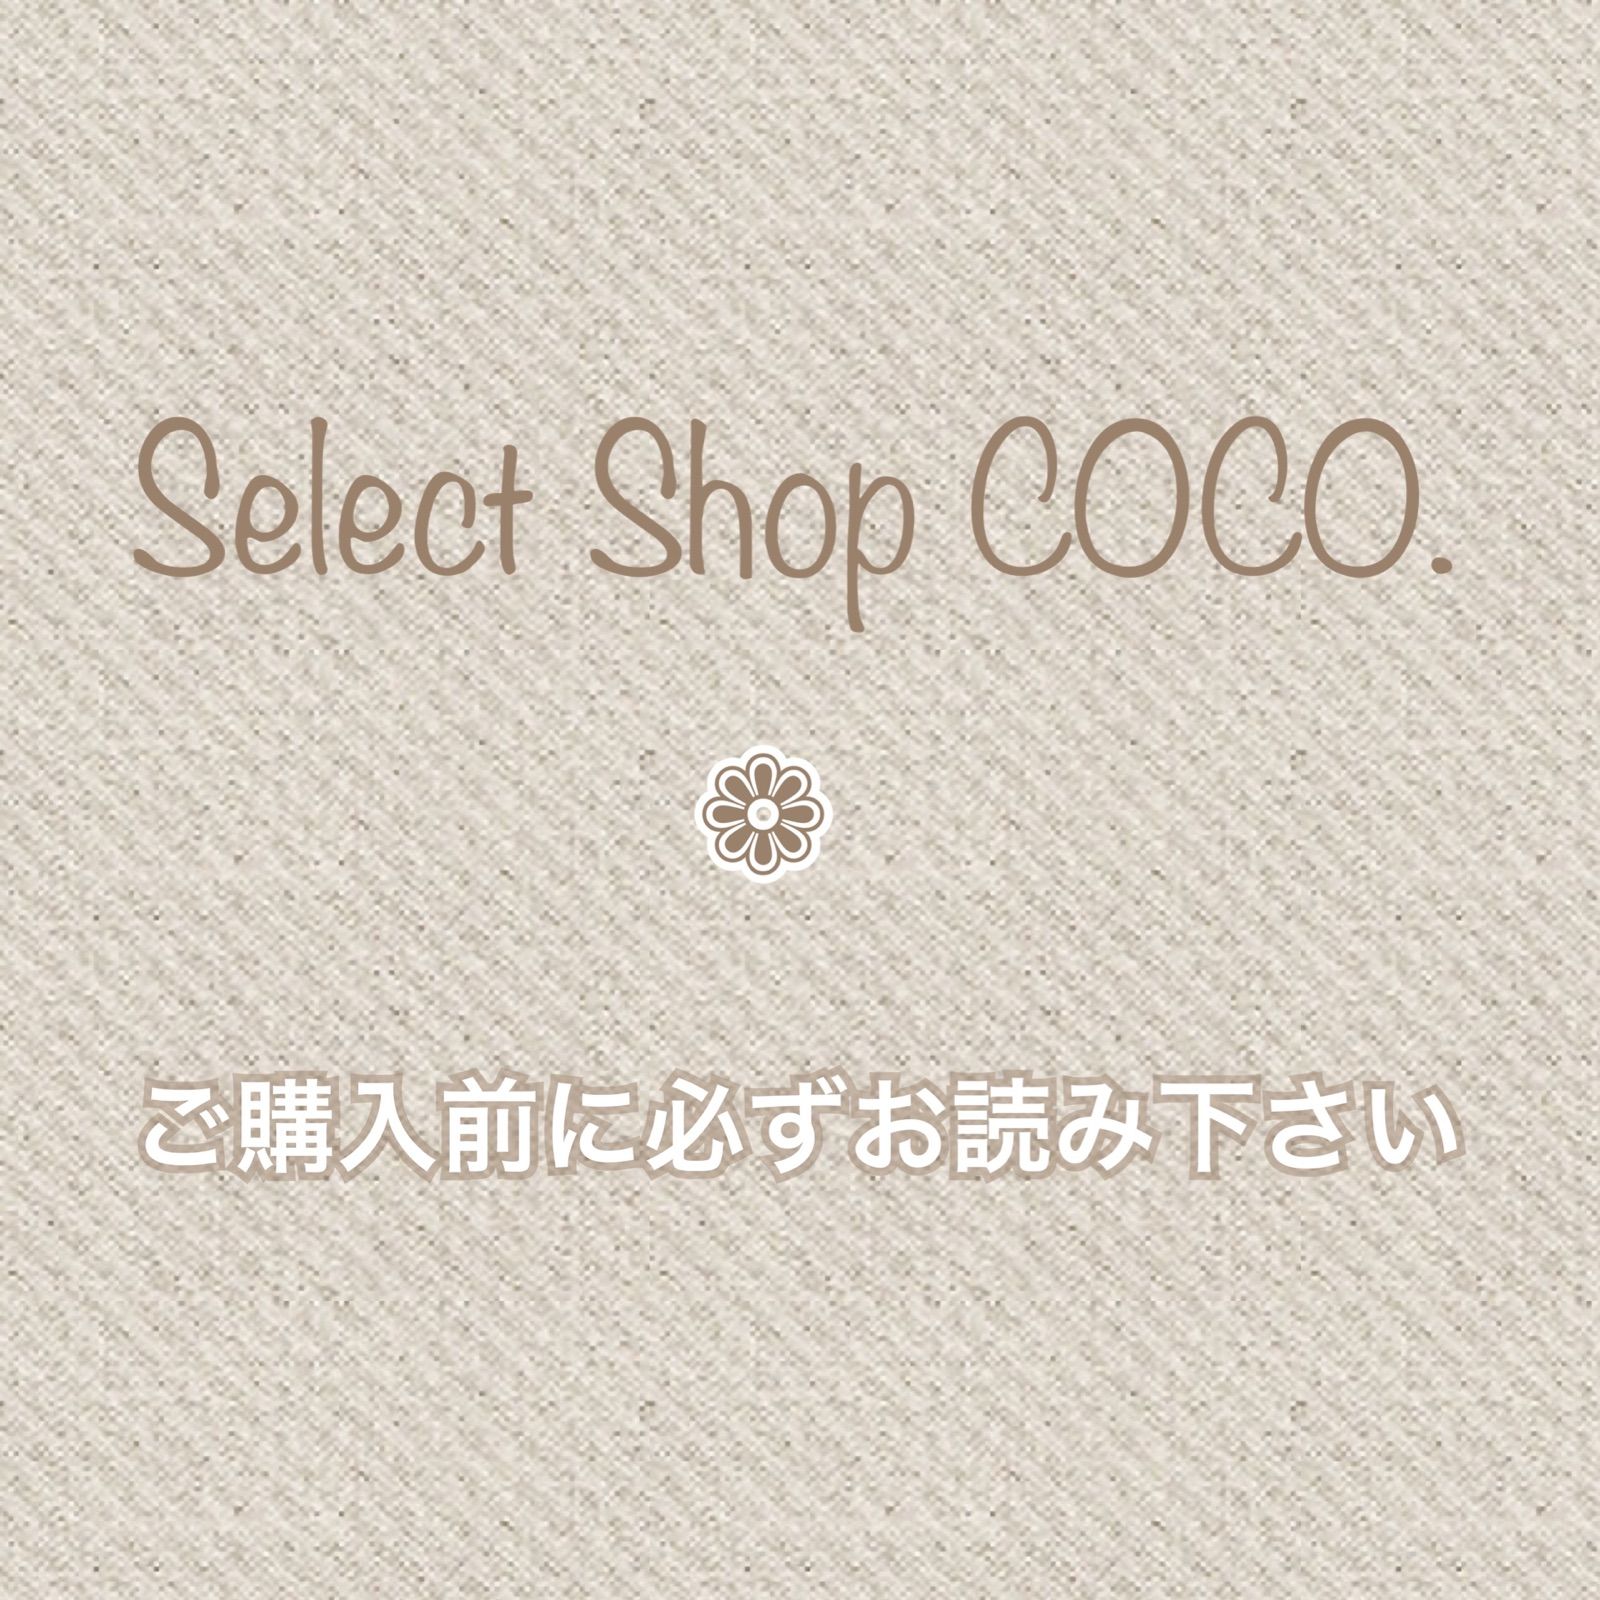 ご購入前に必ずお読み下さい⁎ˇ◡ˇ⁎ - Select Shop COCO. - メルカリ